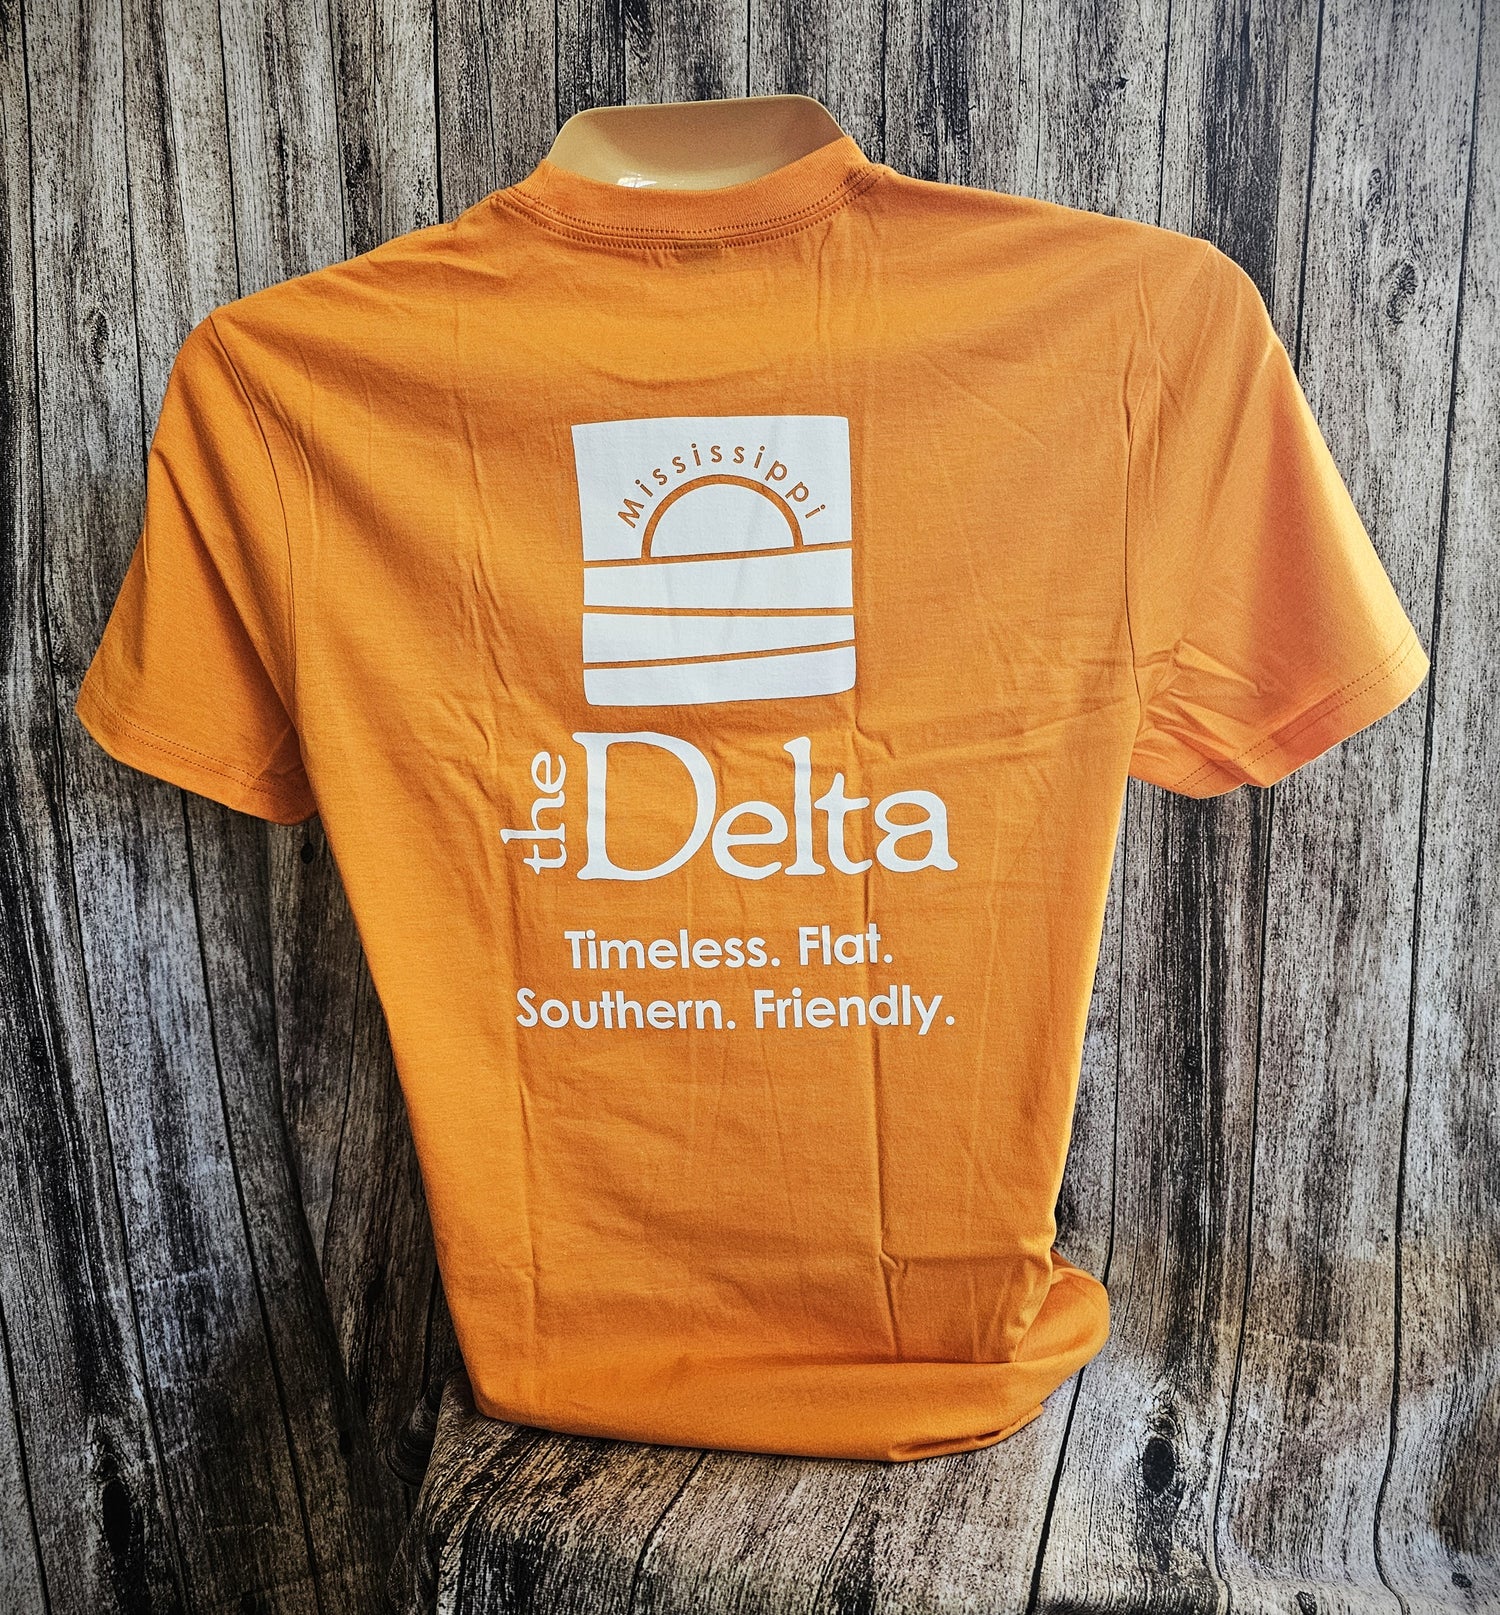 The Delta